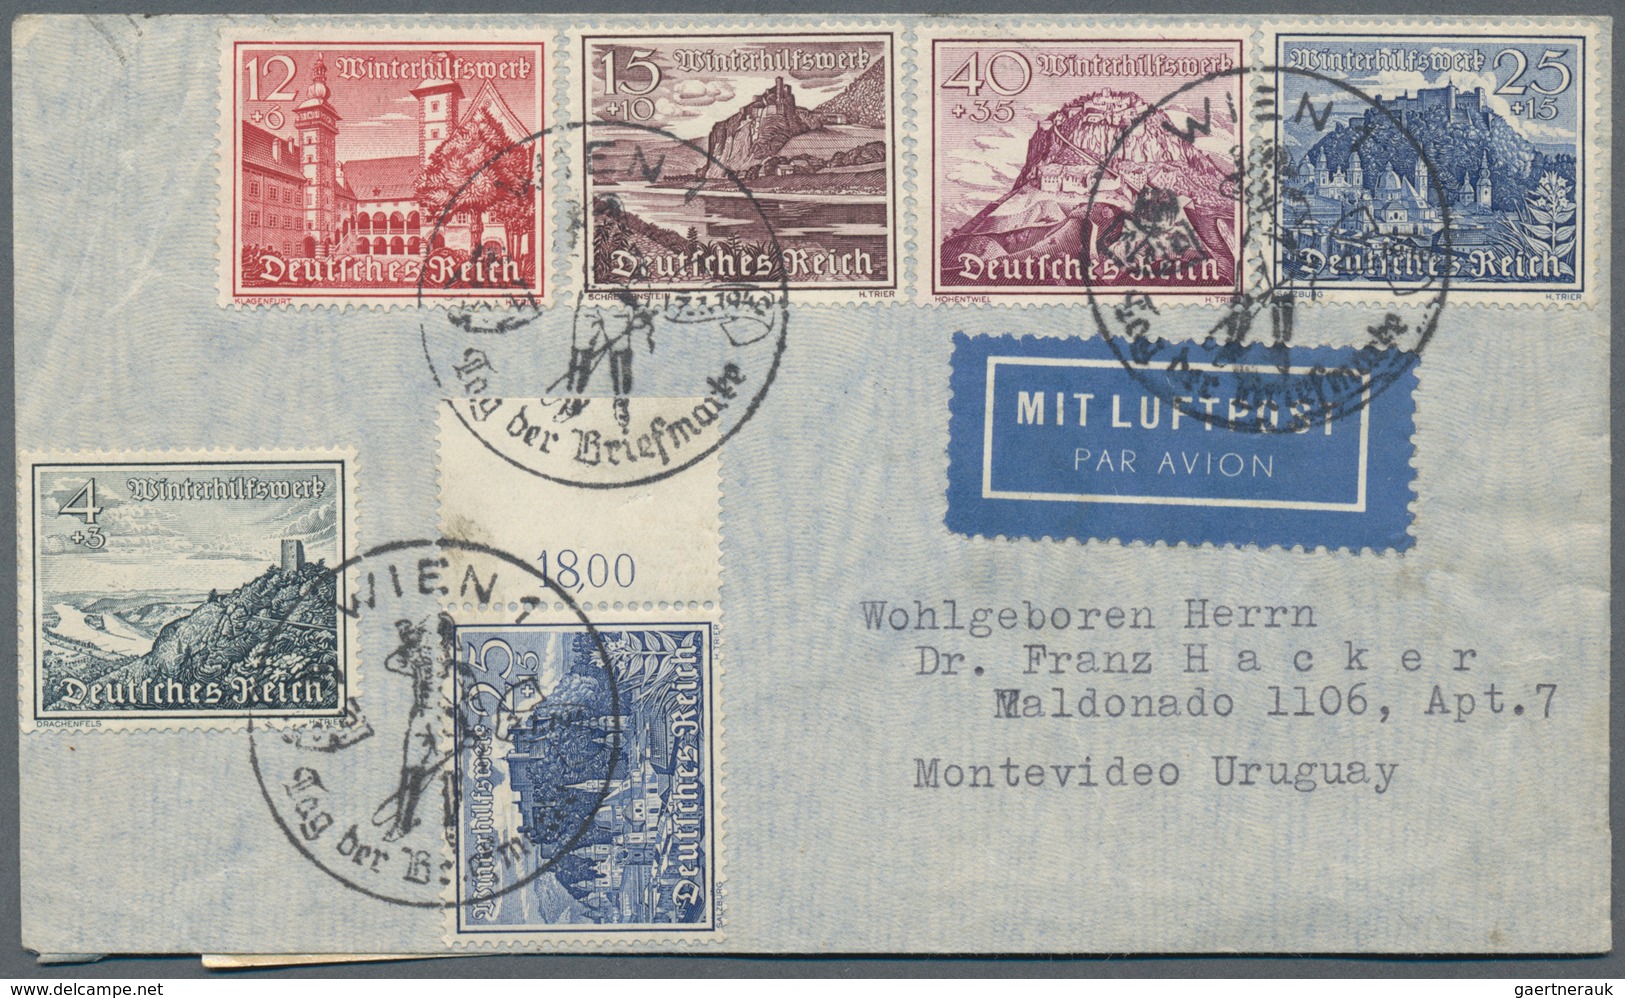 Deutsches Reich - 3. Reich: 1934/1944, nette Partie von ca. 60 Briefen und Karten, dabei Wagner-Fran